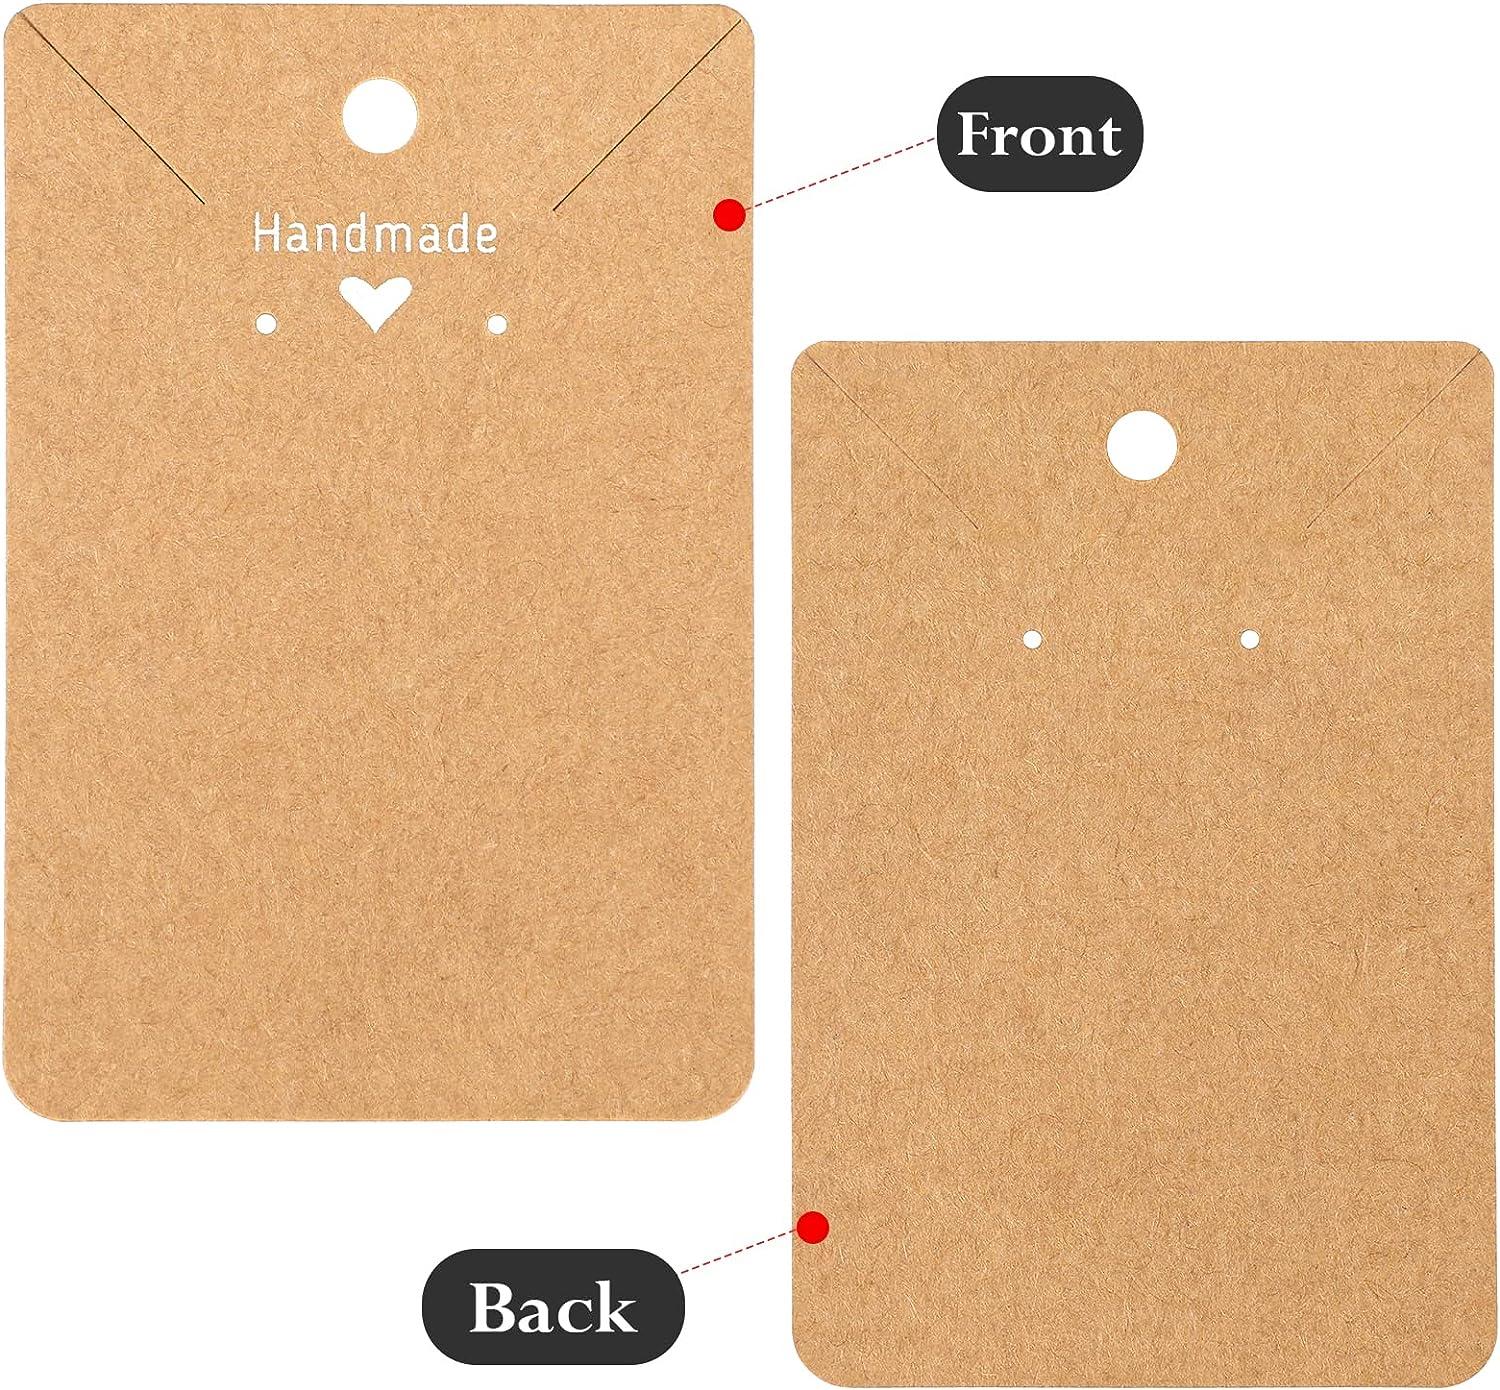 100pcs Kraft Display Cardboard Paper Earring Handmade Hang Tag Packaging  Cards